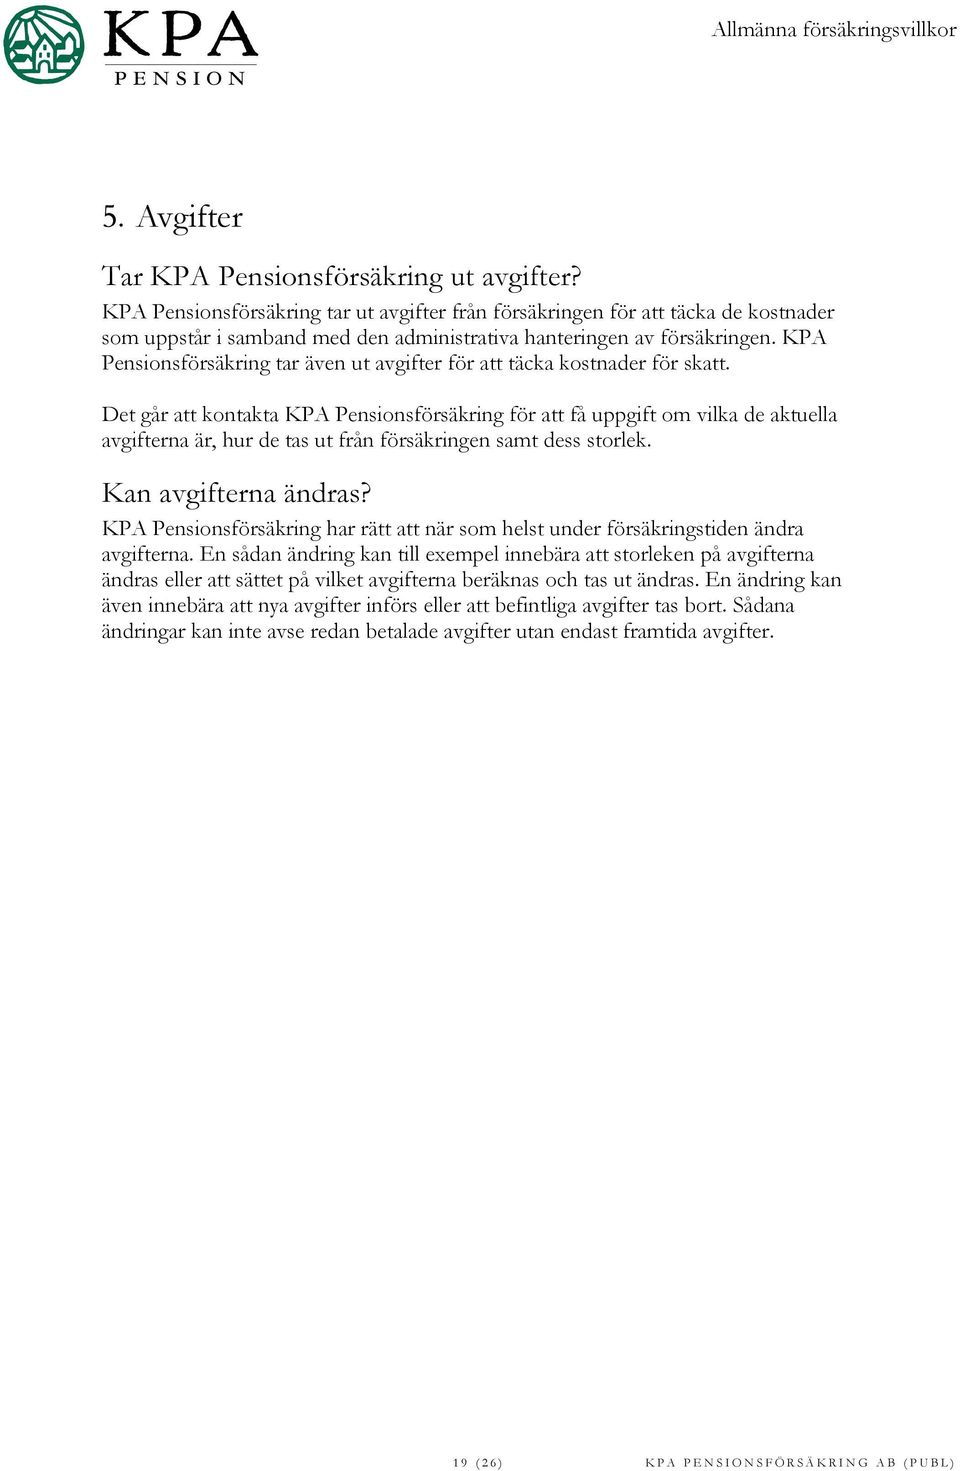 KPA Pensionsförsäkring tar även ut avgifter för att täcka kostnader för skatt.